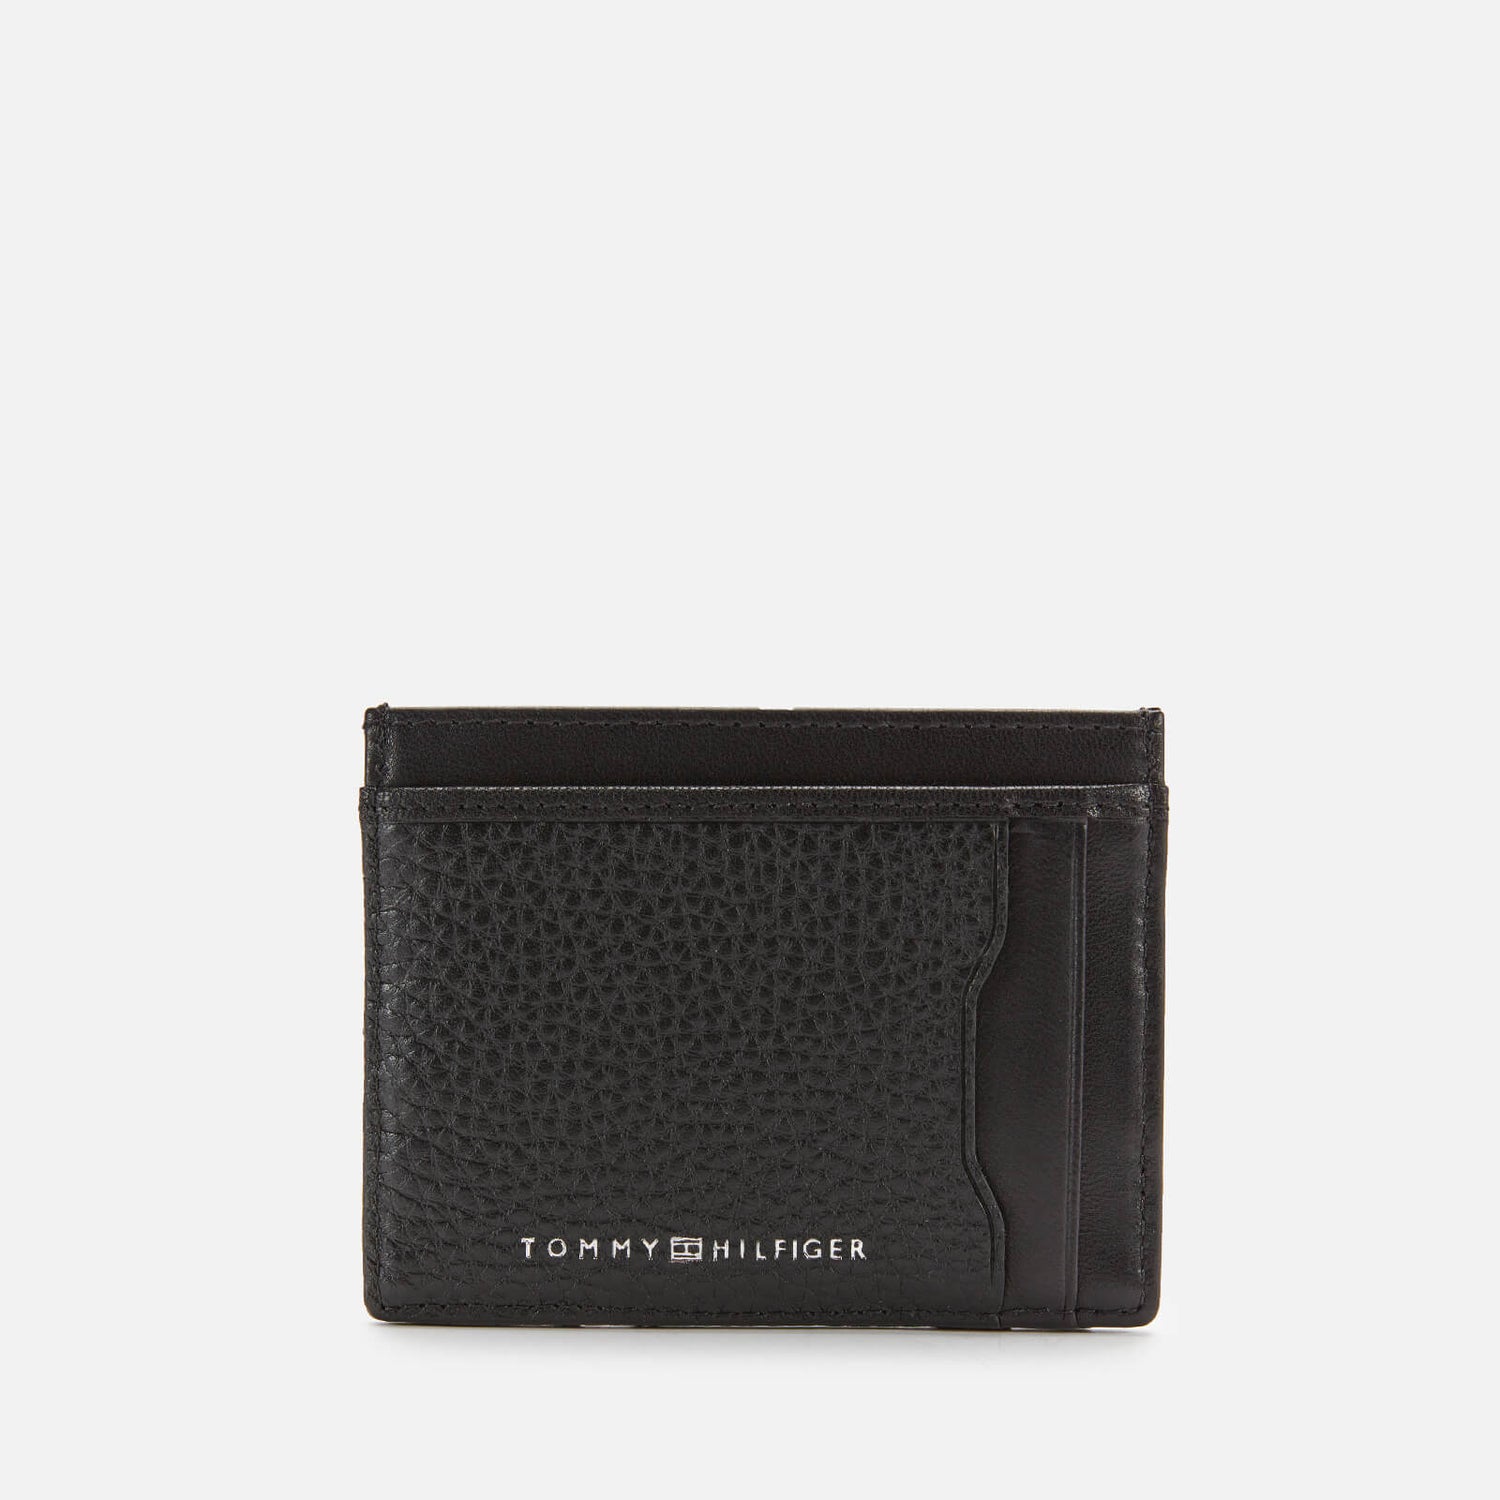 Tommy Hilfiger Men's Downtown Credit Card Holder - Black